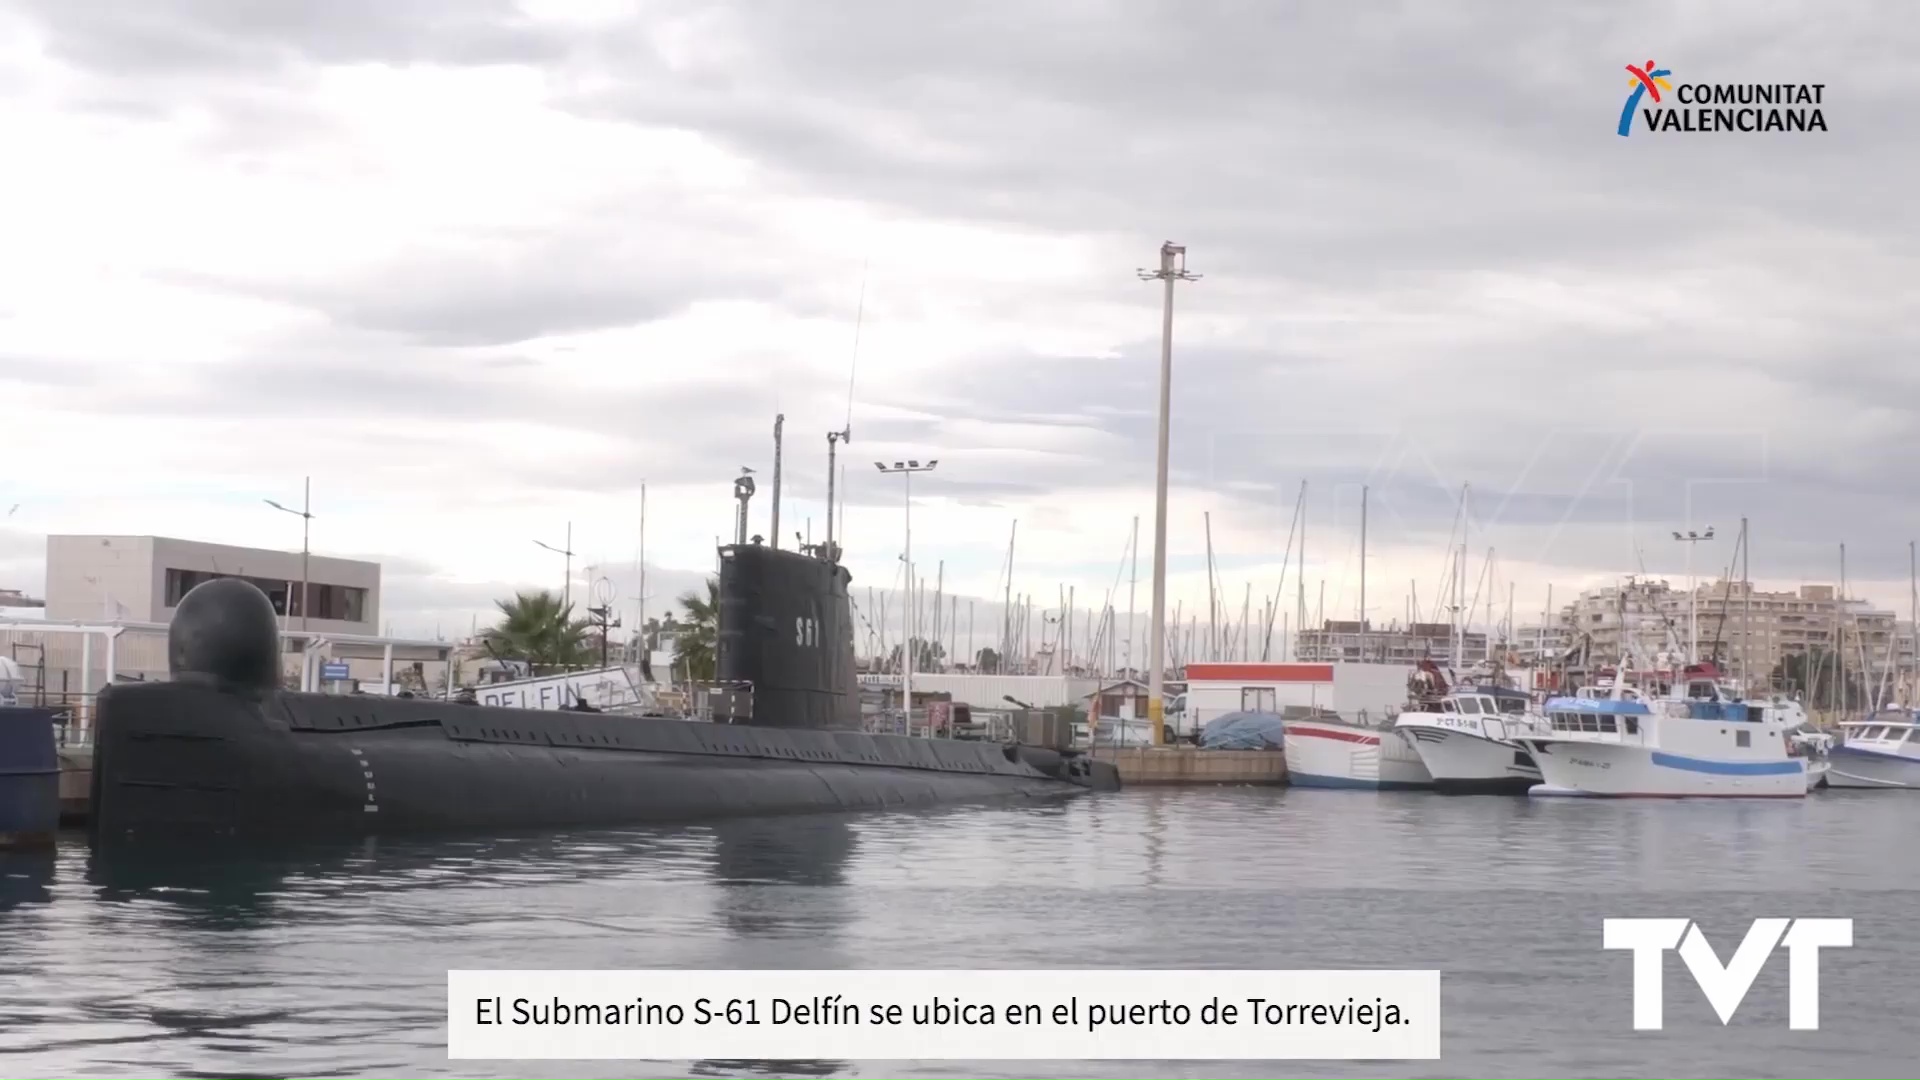 Imagen de Turisme CV invita a disfrutar del Submarino Delfín S-61 de Torrevieja durante esta Semana Santa